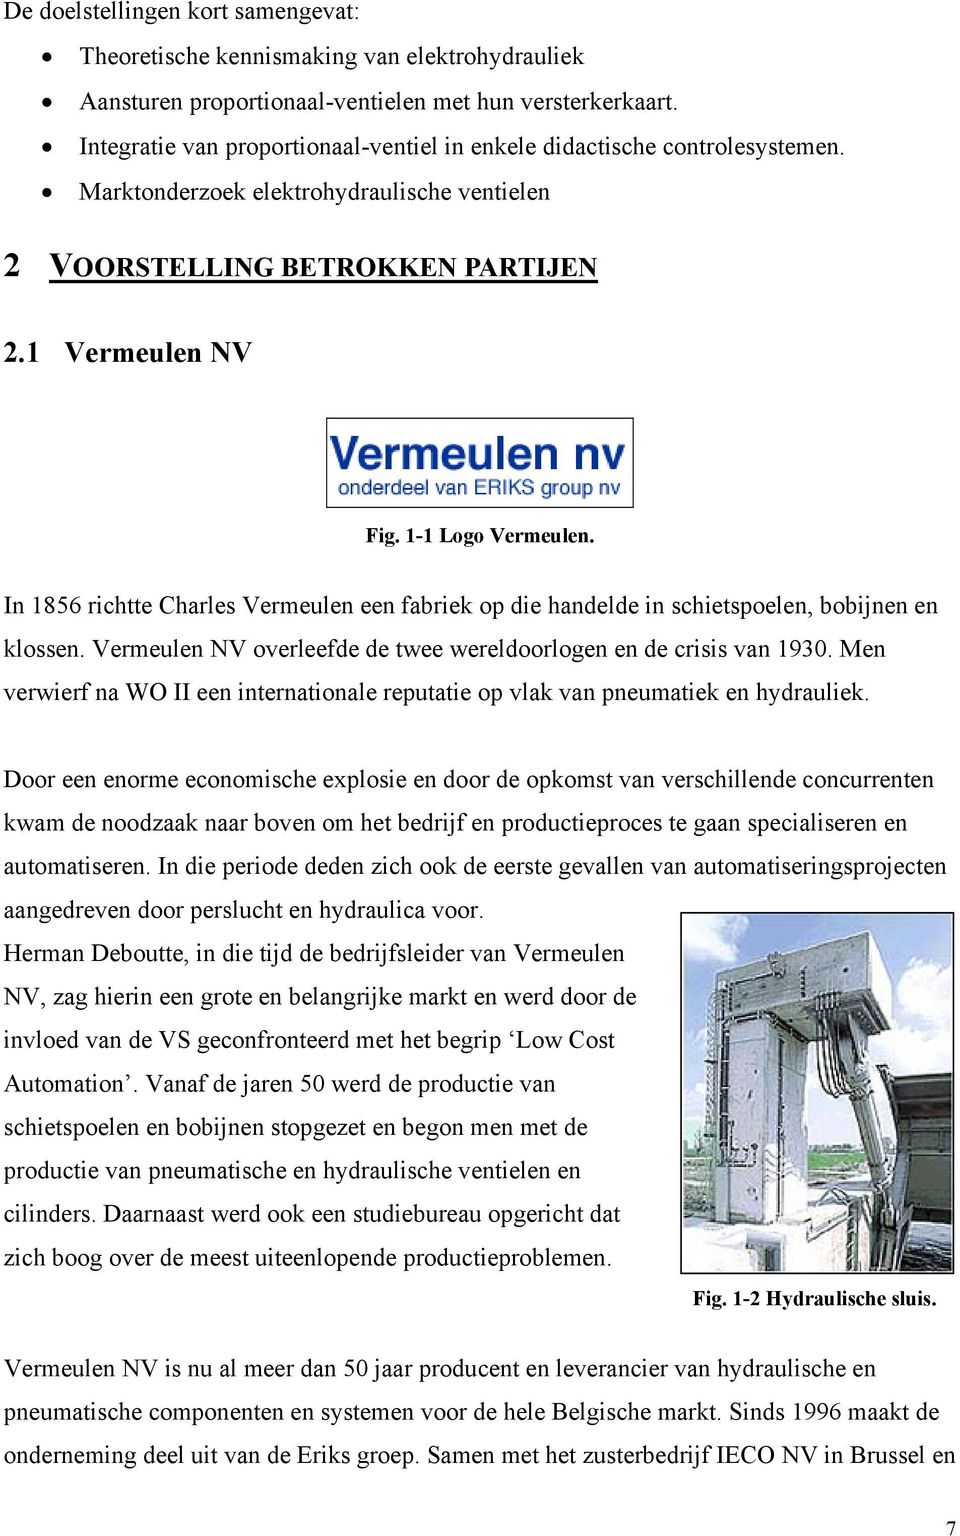 In 1856 richtte Charles Vermeulen een fabriek op die handelde in schietspoelen, bobijnen en klossen. Vermeulen NV overleefde de twee wereldoorlogen en de crisis van 1930.